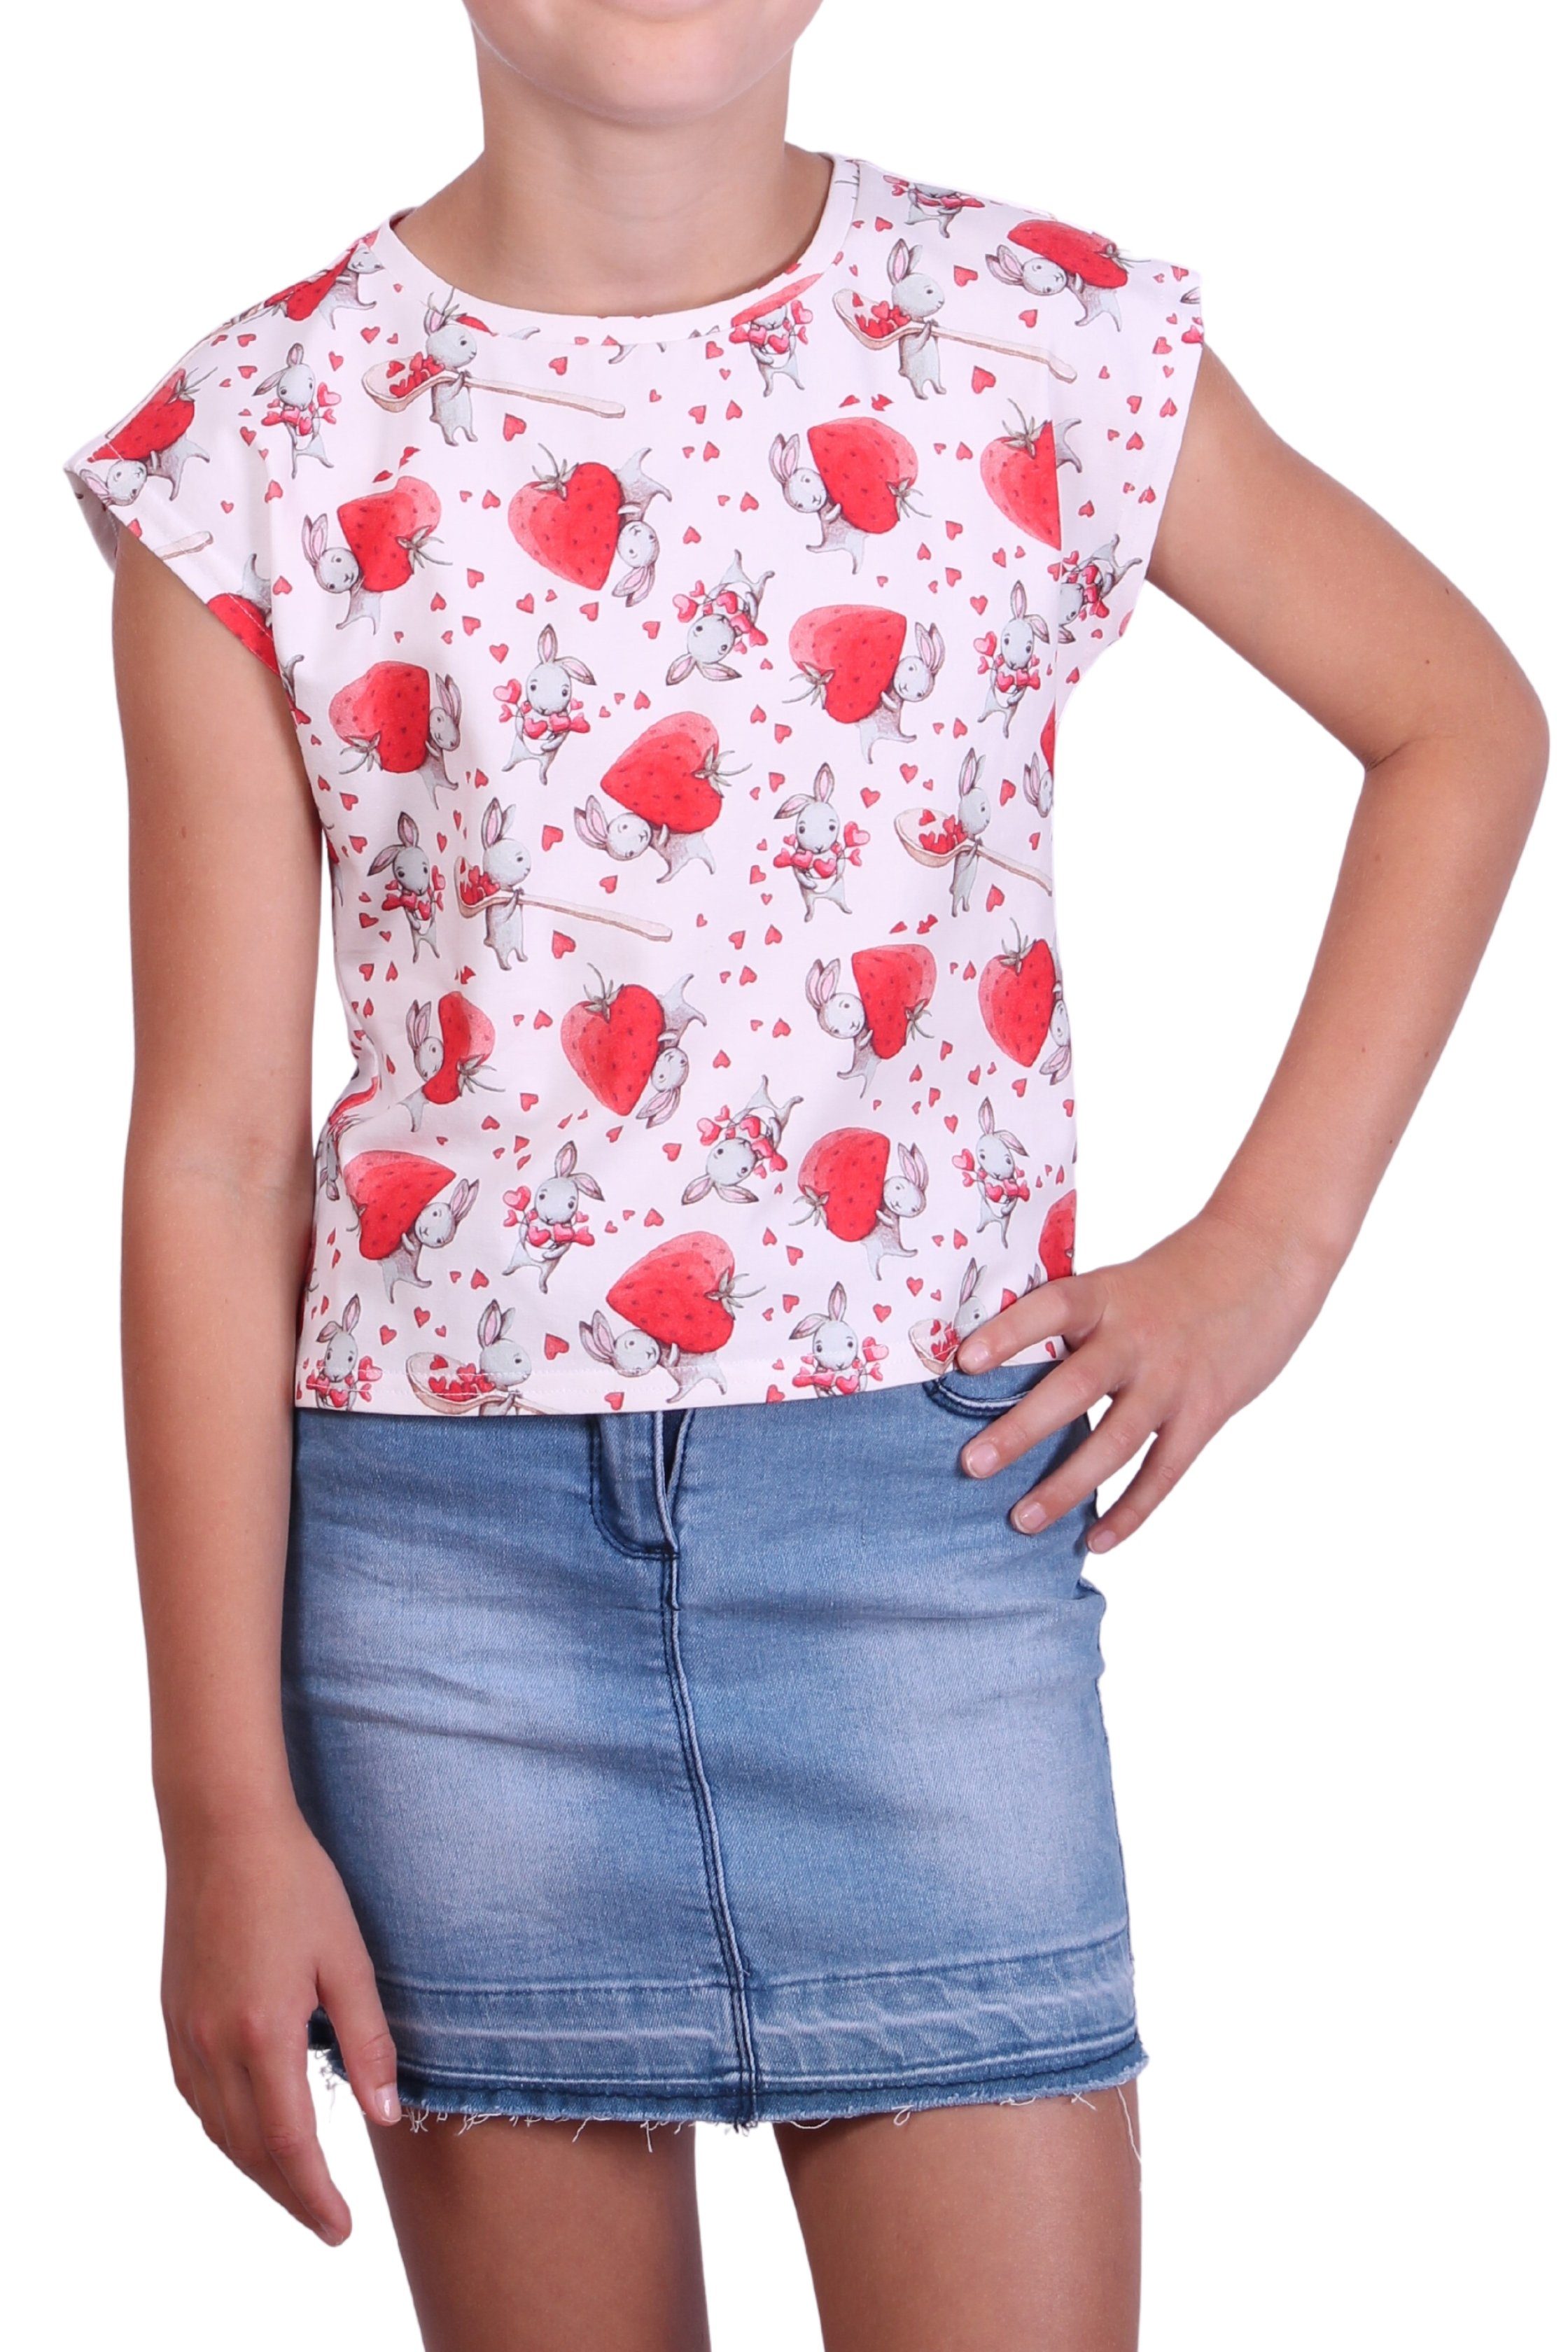 coolismo T-Shirt Print-Shirt für Mädchen mit Erdbeeren-Häschen-Motiv Rundhalsausschnitt, Alloverprint, Baumwolle | T-Shirts